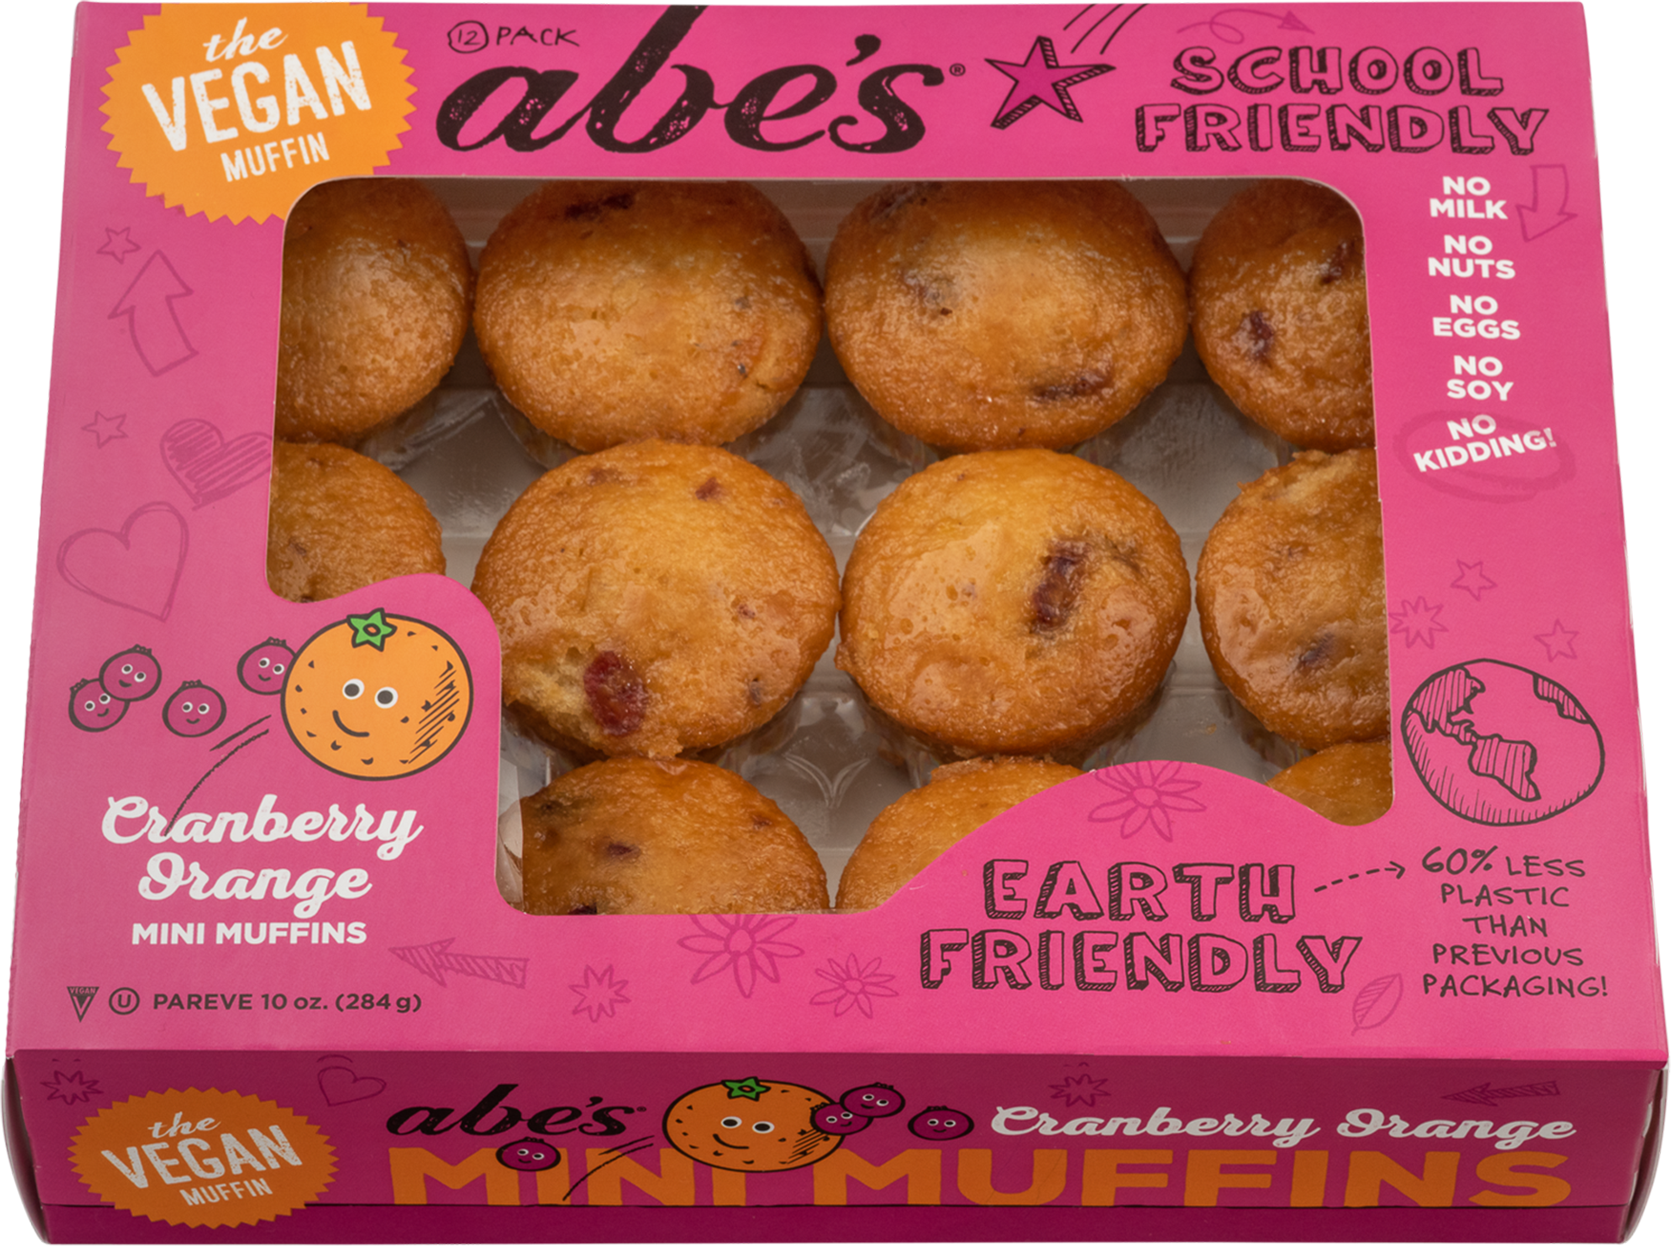 Cranberry Orange Mini Muffins